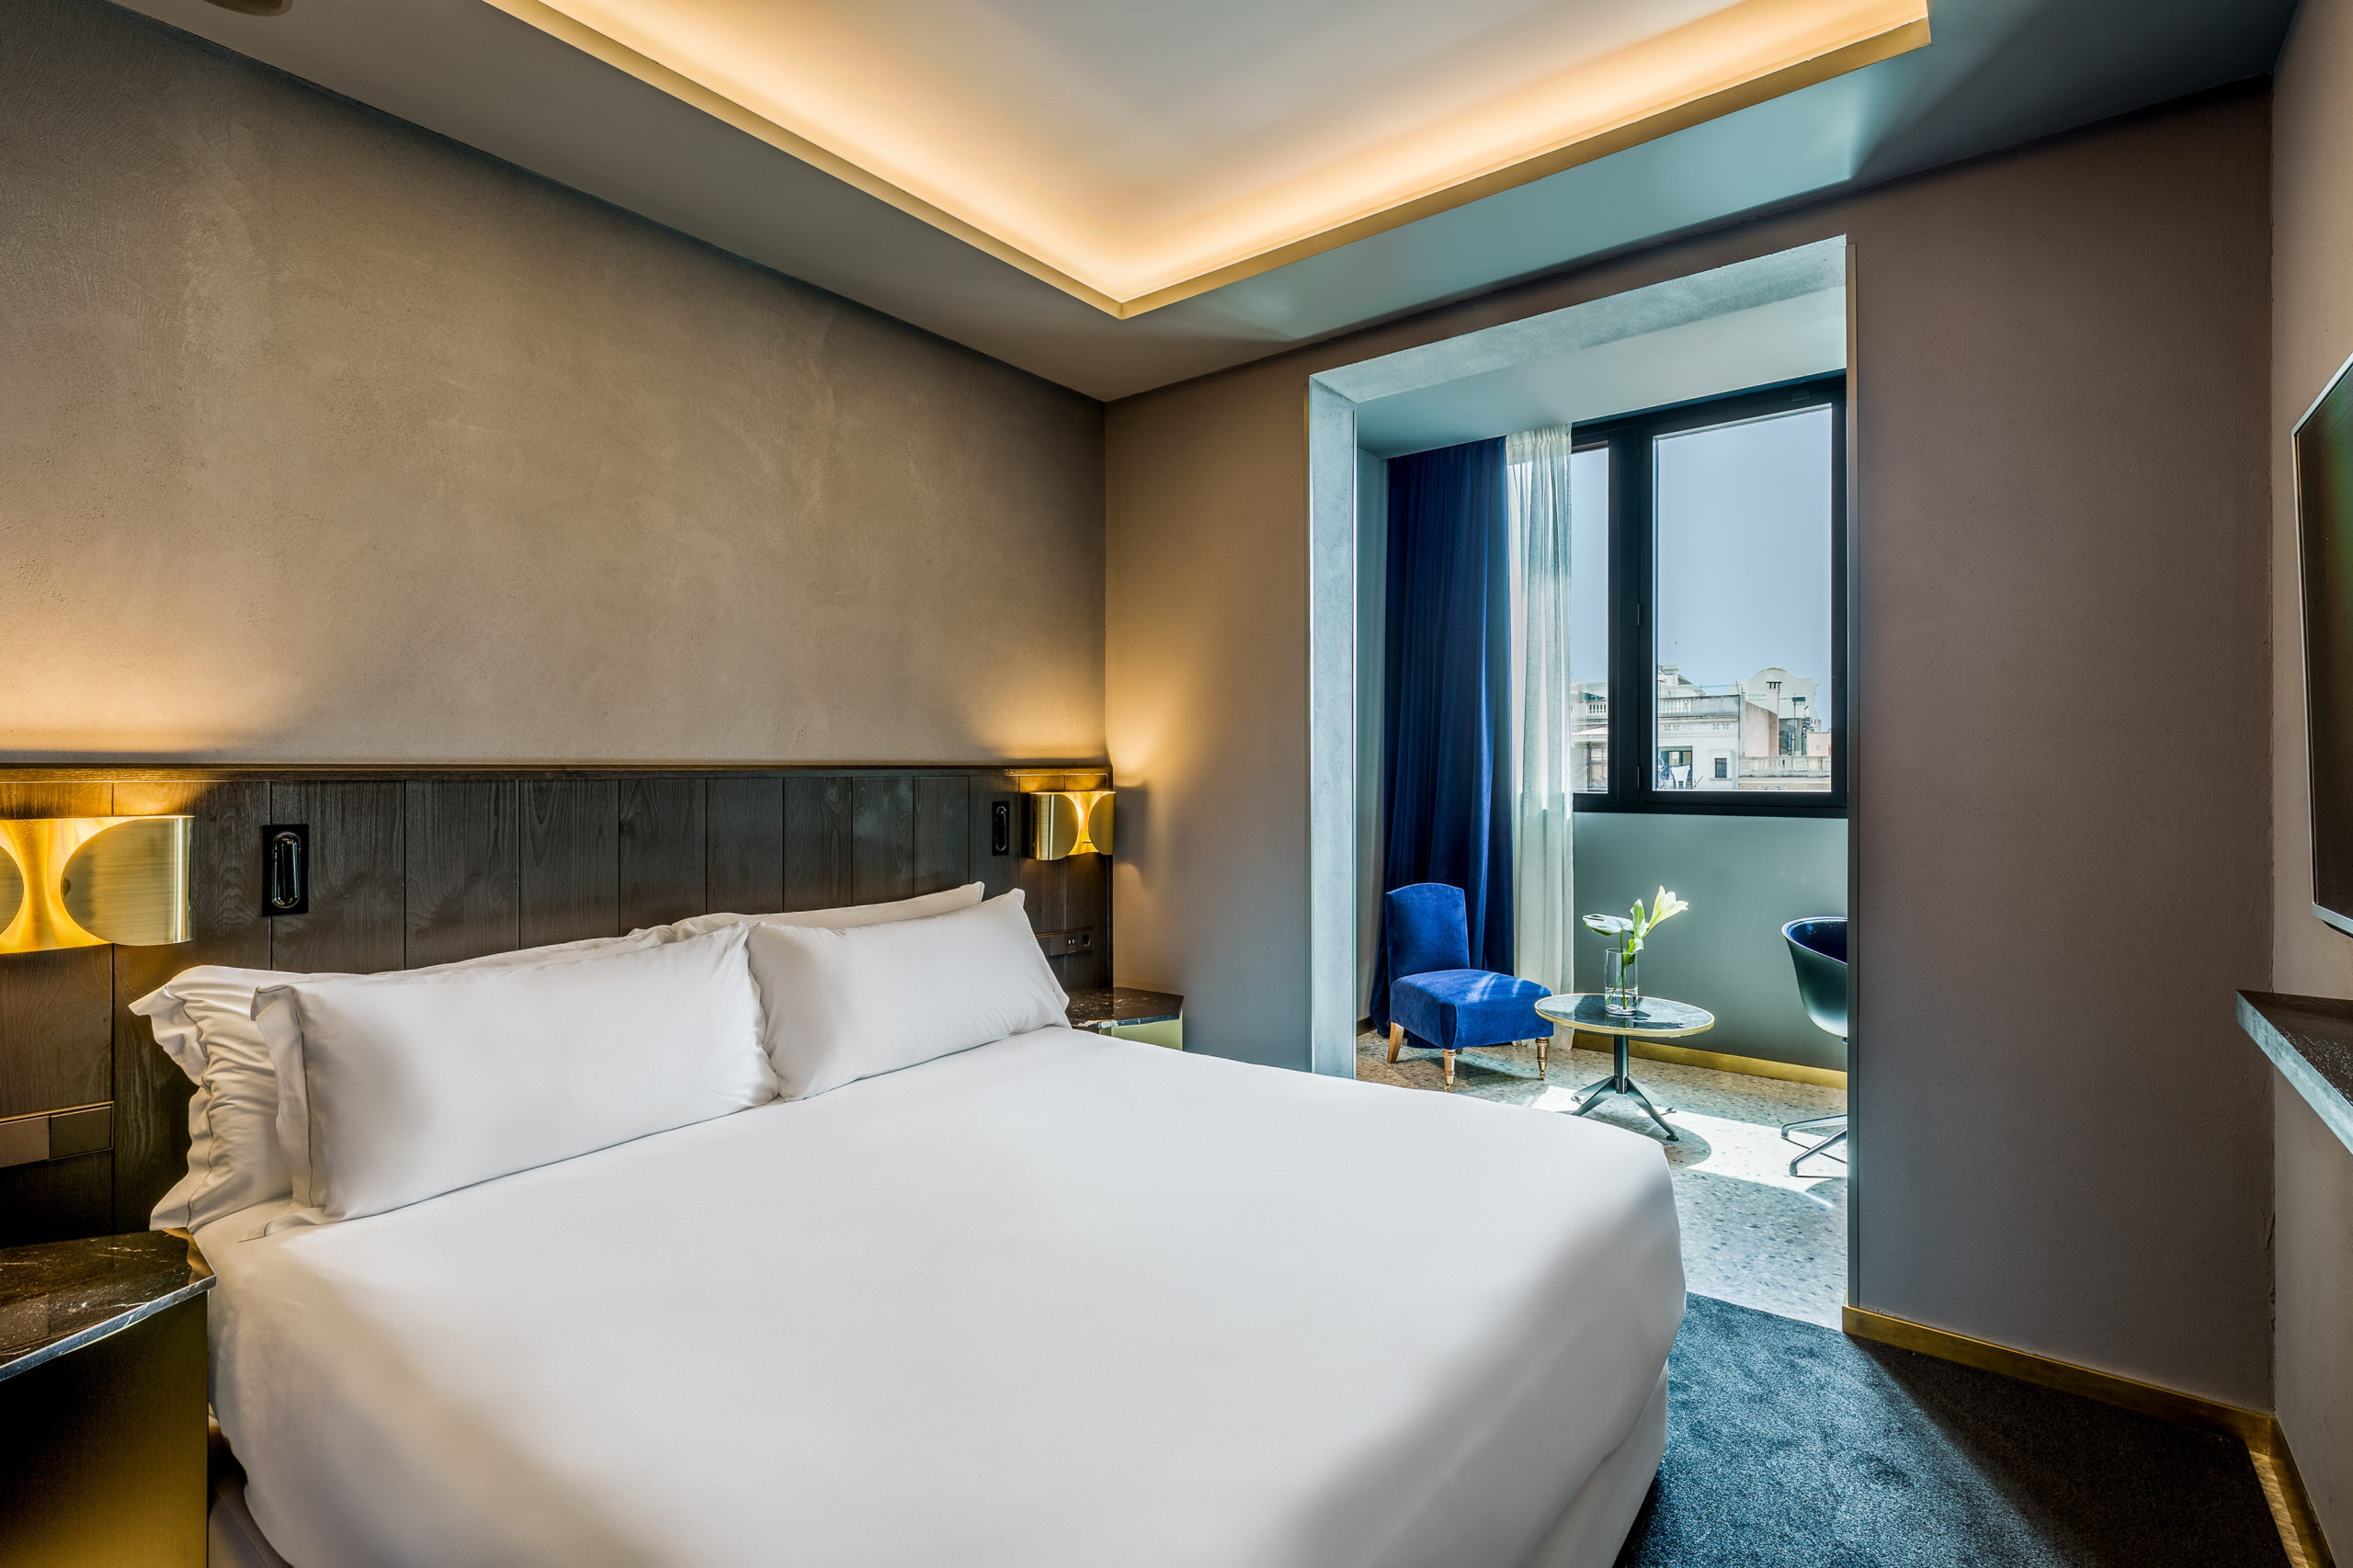 Room Mate Hotels espera cerrar el año alcanzando 150 millones de euros de cifra de ventas